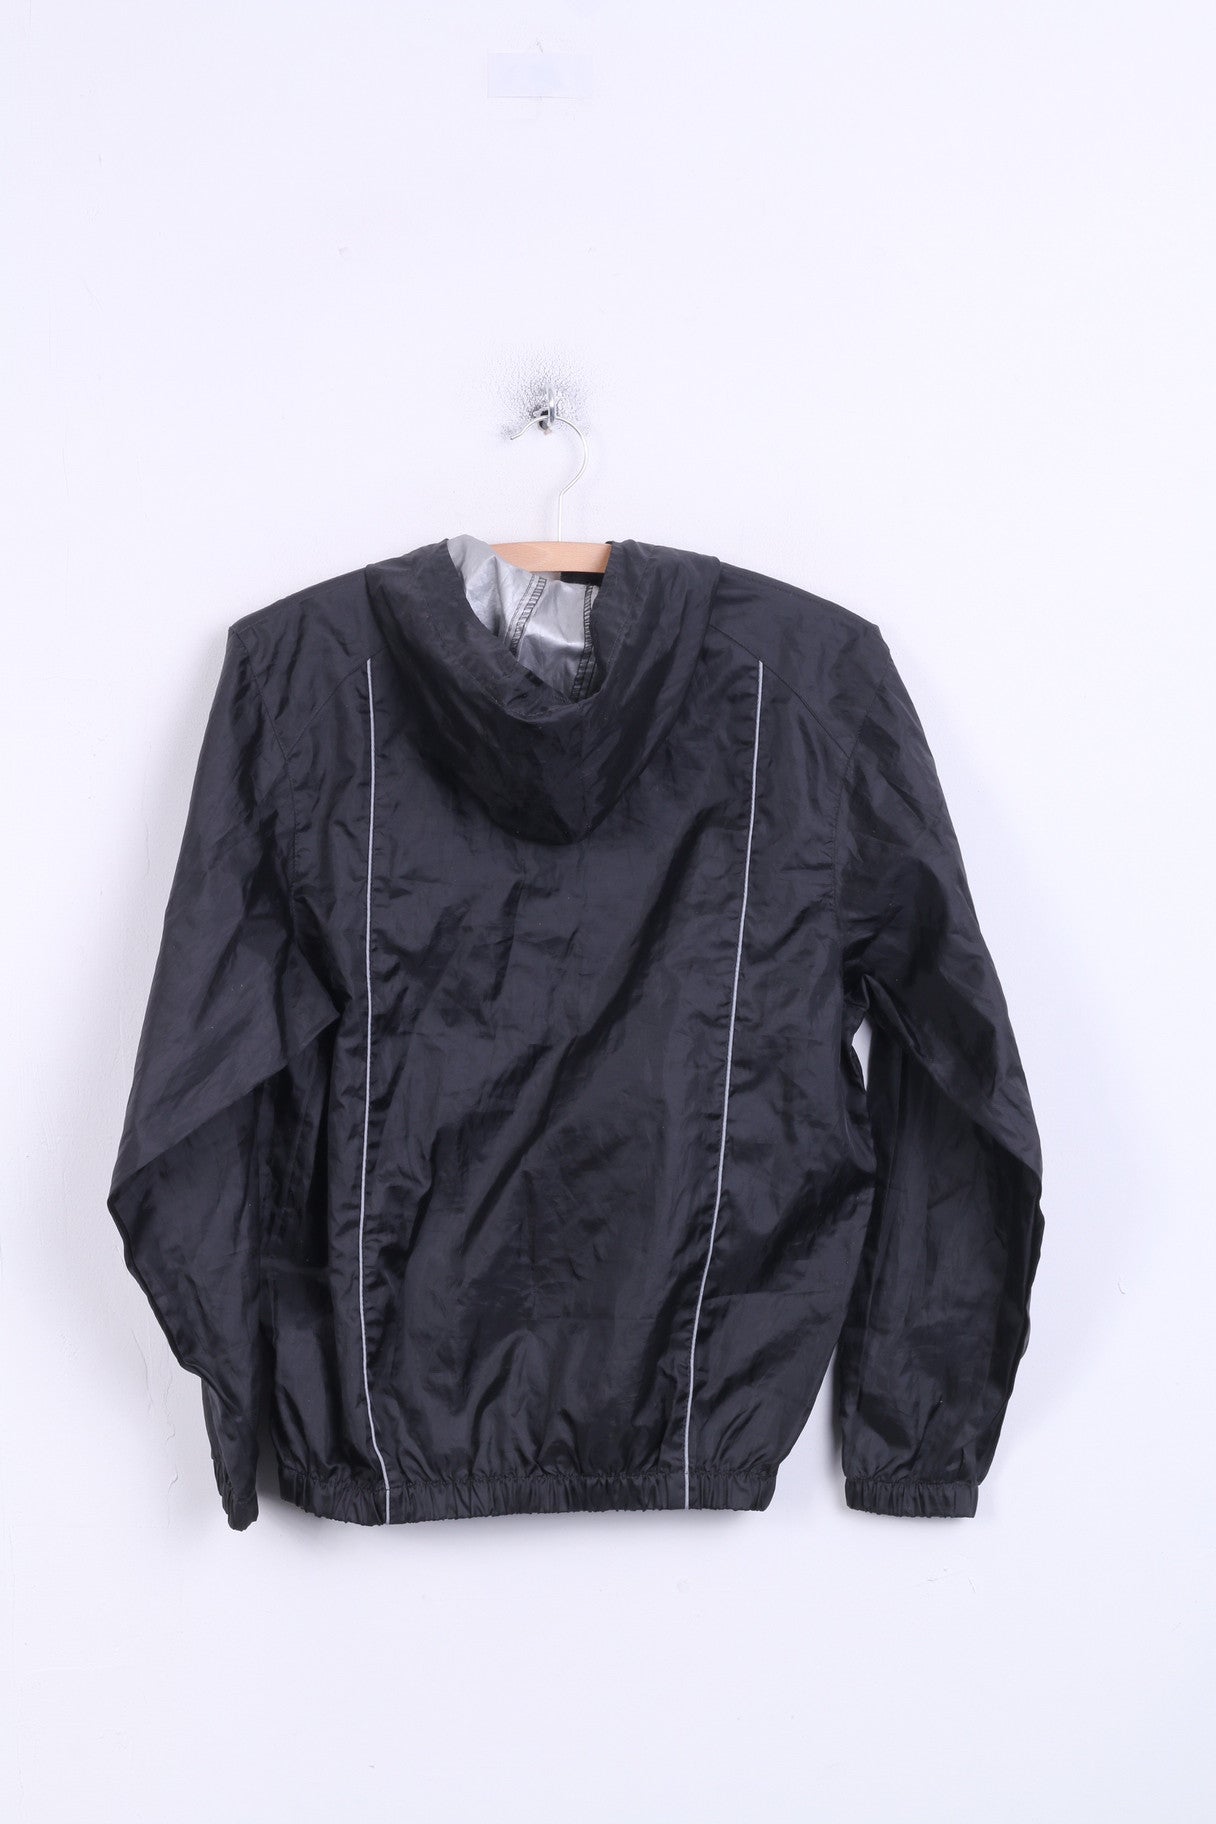 Umbro Boys XL Jacket Track Top Black Hood Zip Neck - RetrospectClothes